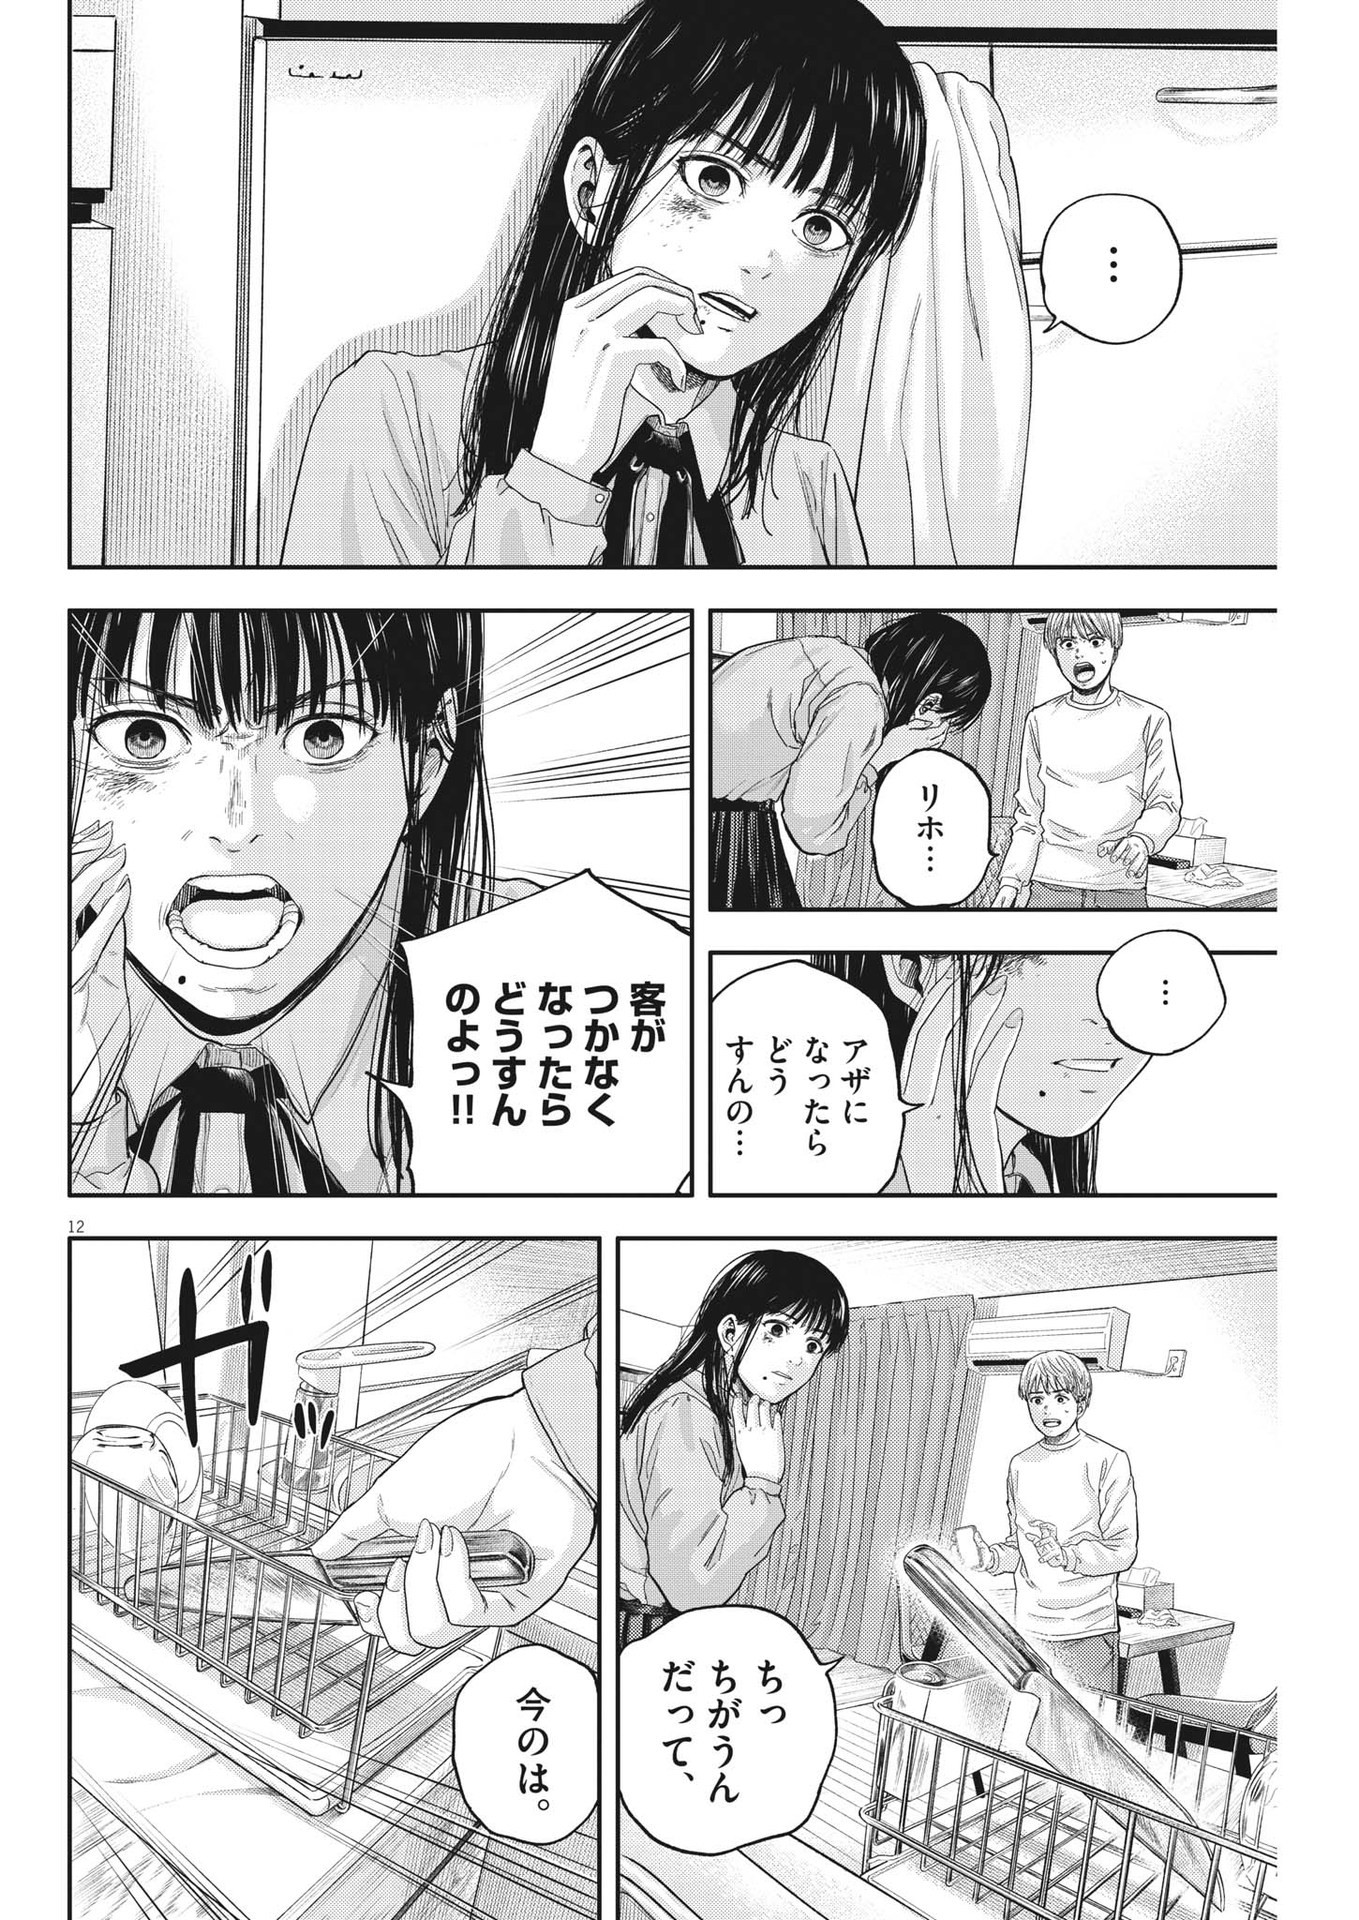 Yumenashi-sensei no Shinroshidou - Chapter 16 - Page 12